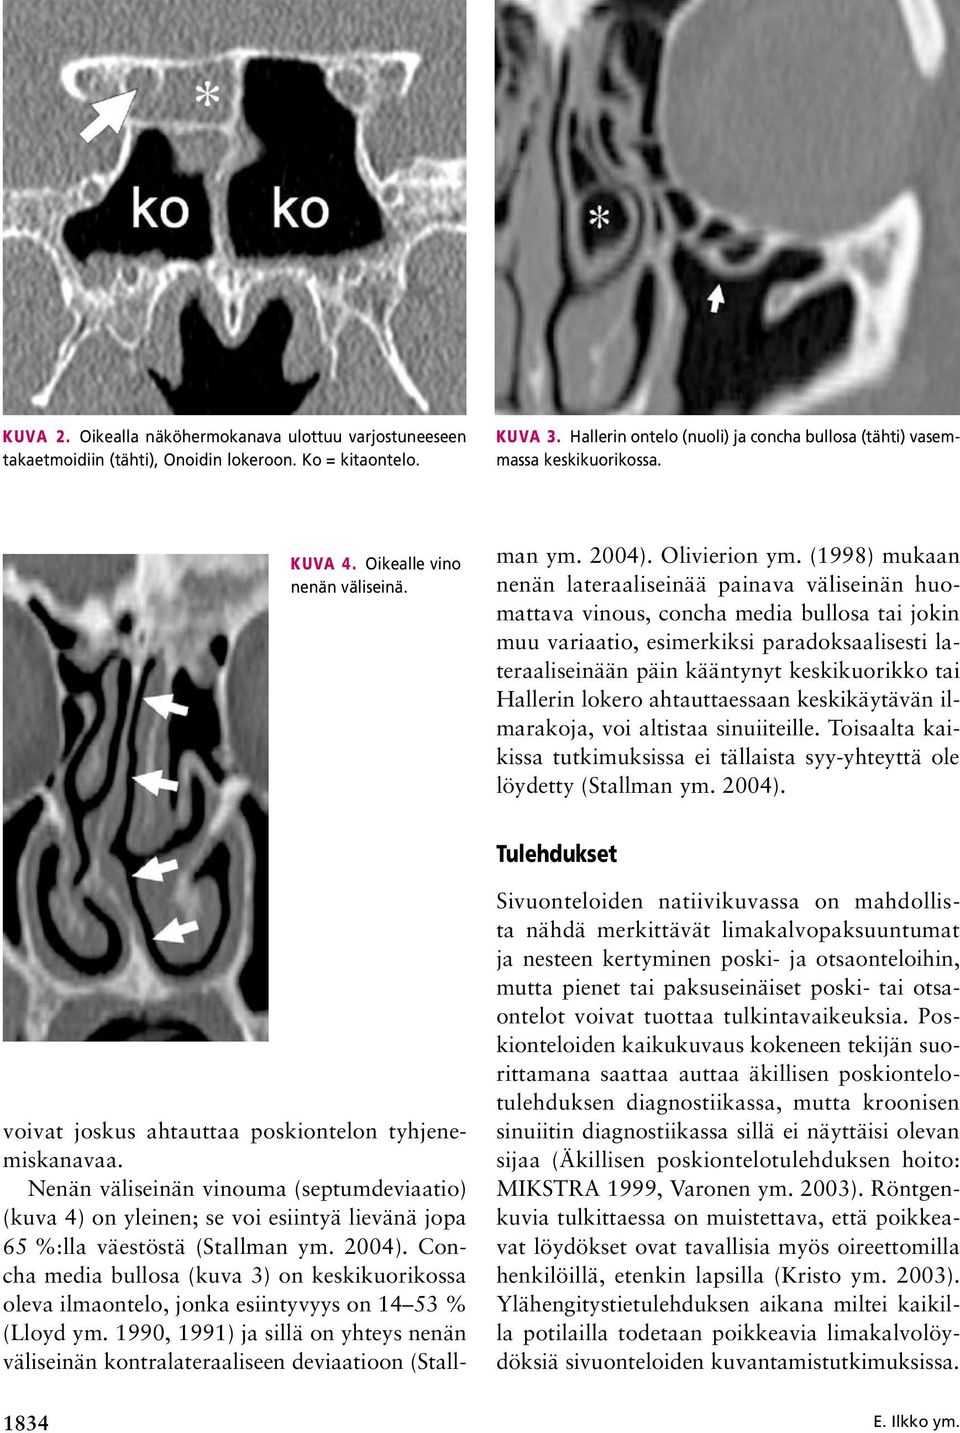 Nenän väliseinän vinouma (septumdeviaatio) (kuva 4) on yleinen; se voi esiintyä lievänä jopa 65 %:lla väestöstä (Stallman ym. 2004).